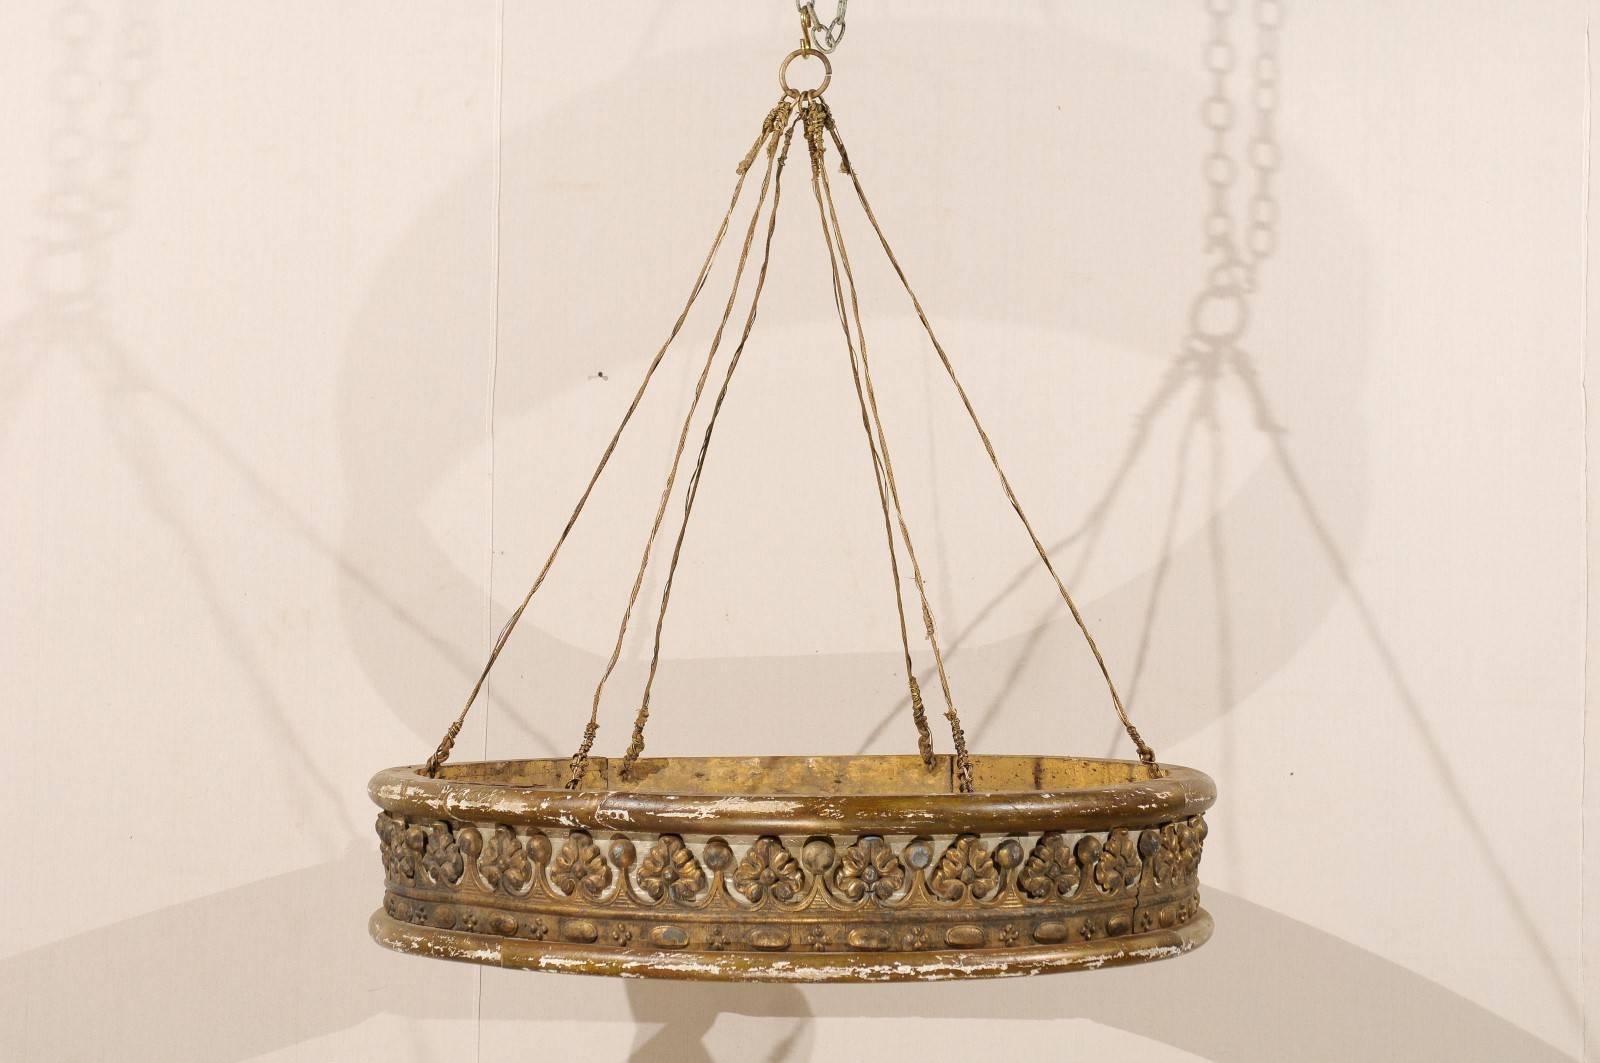 Une couronne de lit italienne du milieu du XIXe siècle, peinte et en bois doré. Cette corona de lit italienne présente un motif joliment sculpté s'enroulant autour de sa face avant, rappelant une couronne royale, sur un fond peint gris beige. Sa